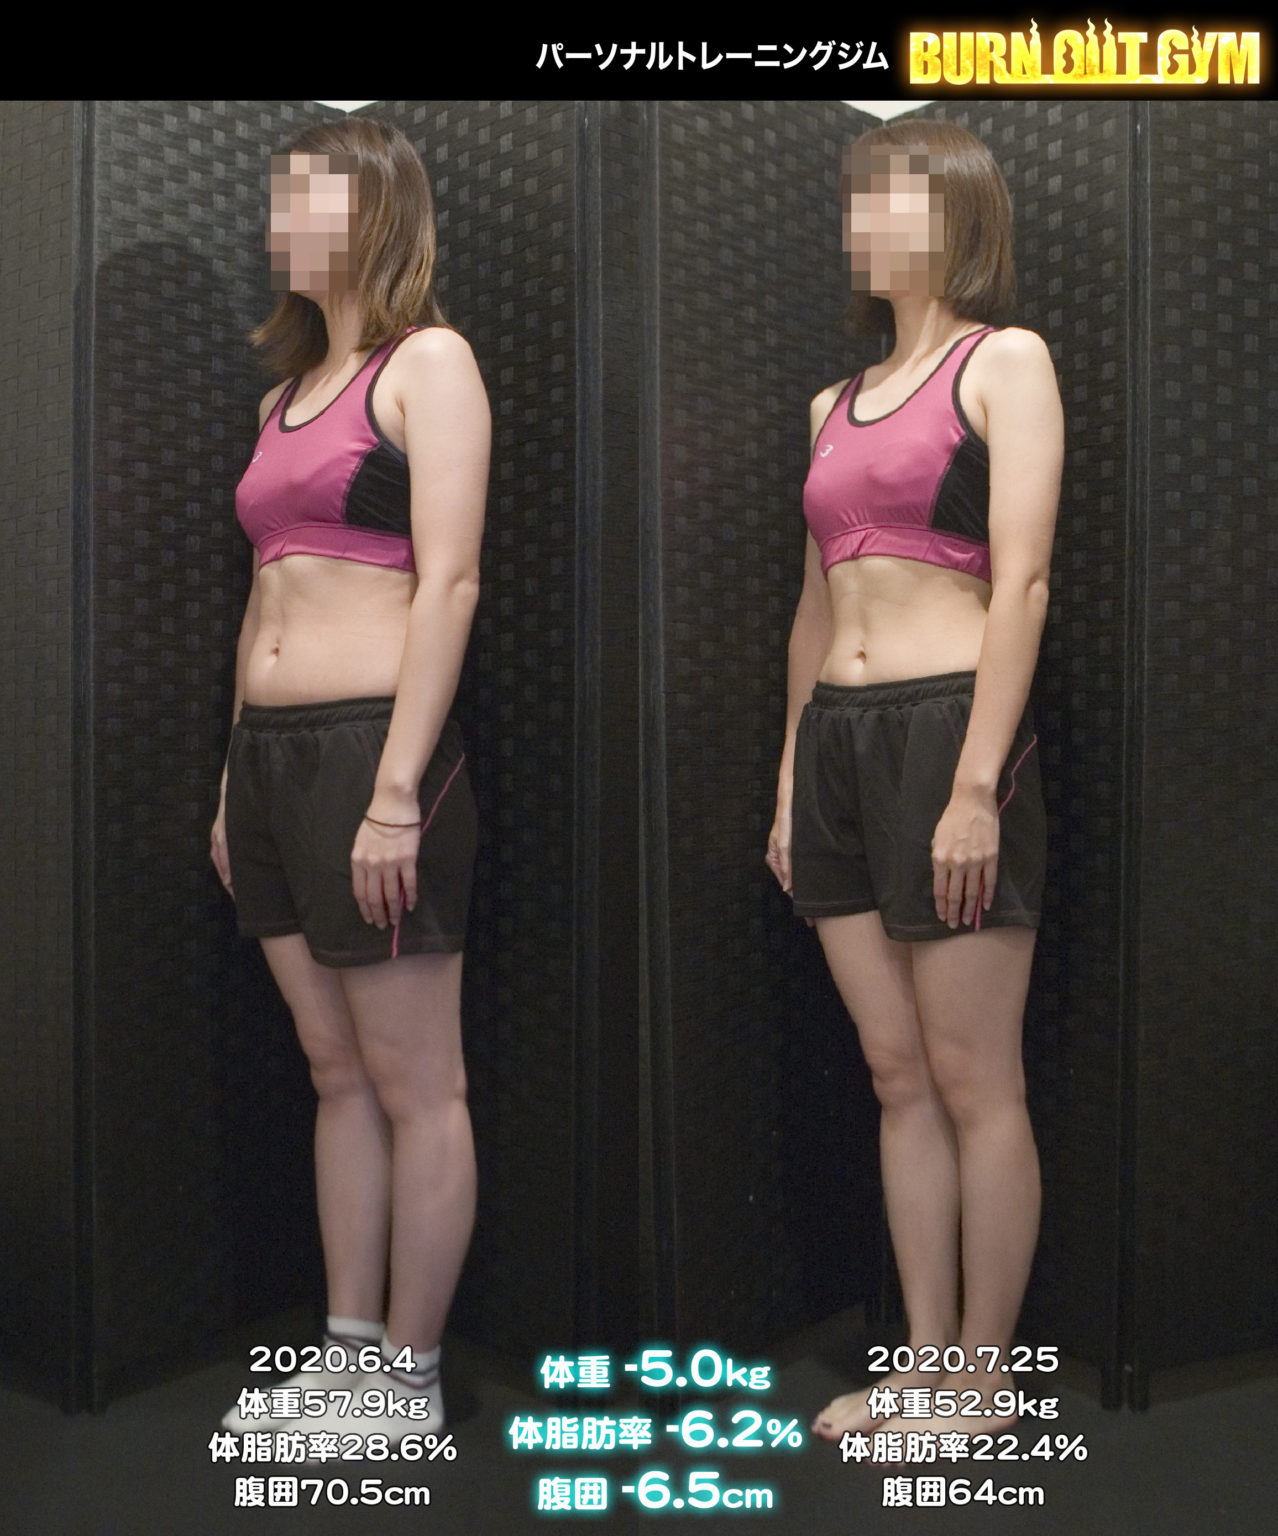 体験者 30代 女性 身長160cm台M・Nさんのダイエット事例 パーソナルトレーニング・ダイエットジム BURN OUT GYM